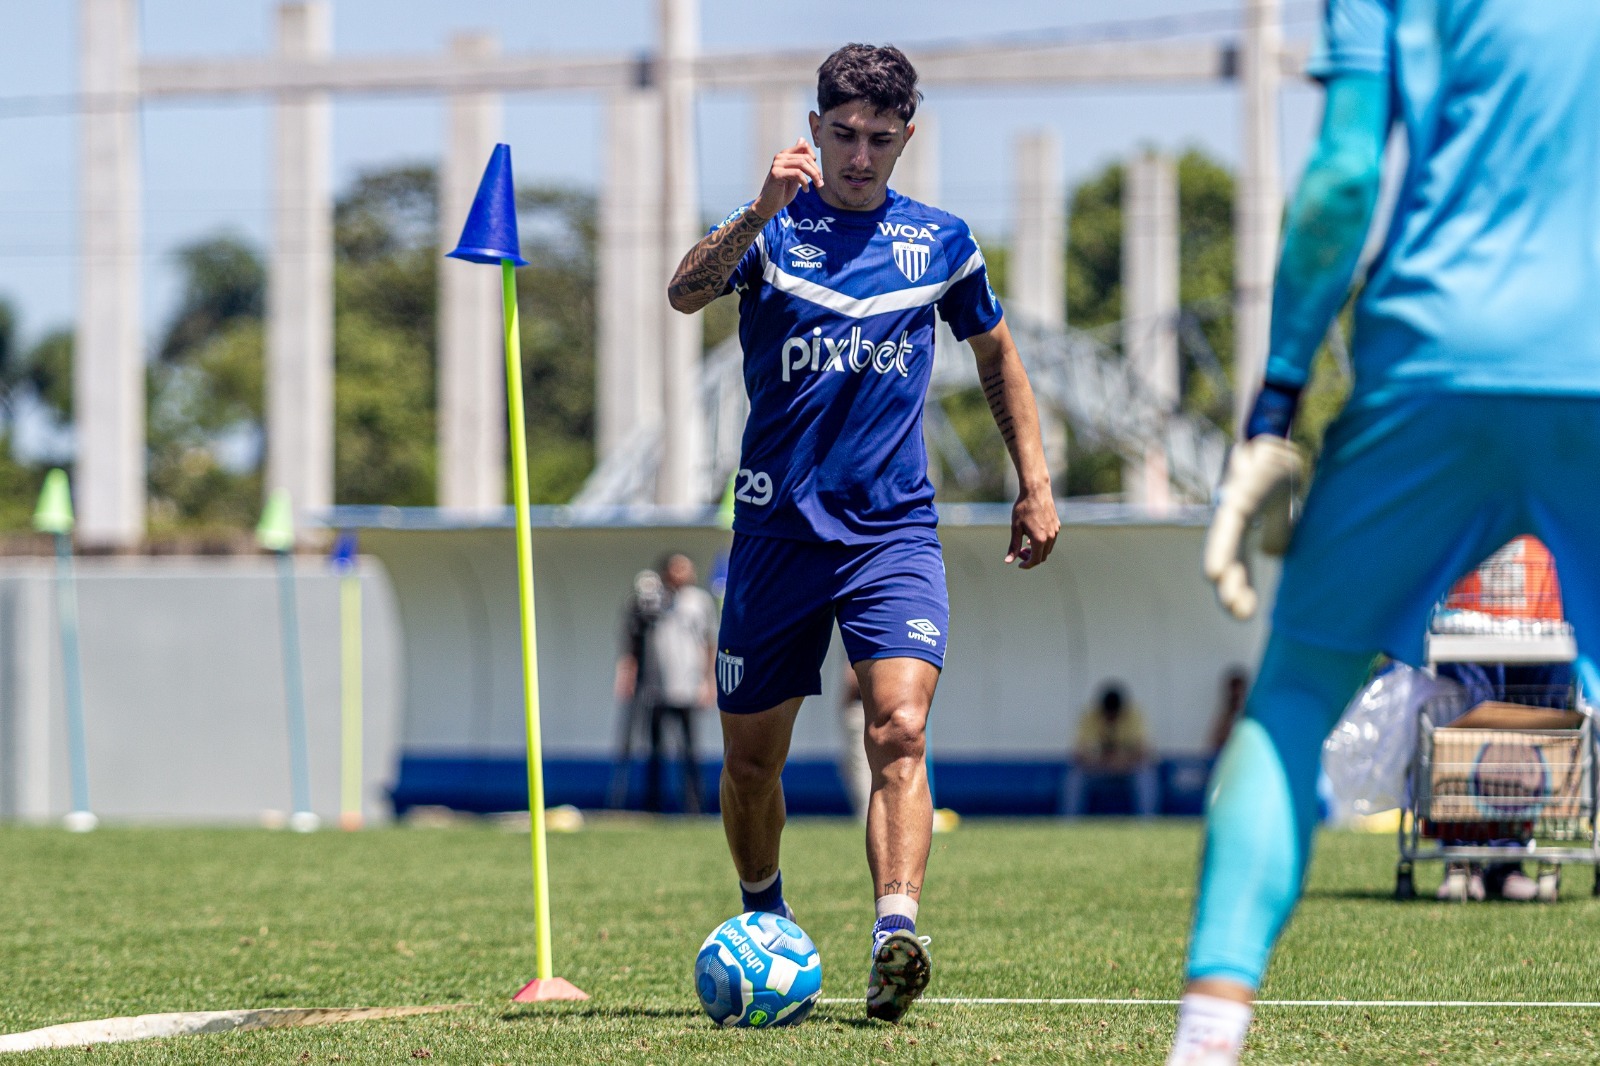 Jean Lucas recuperado de lesão treinando pelo Avaí (Foto: Leandro Boeira/Avaí F.C.)